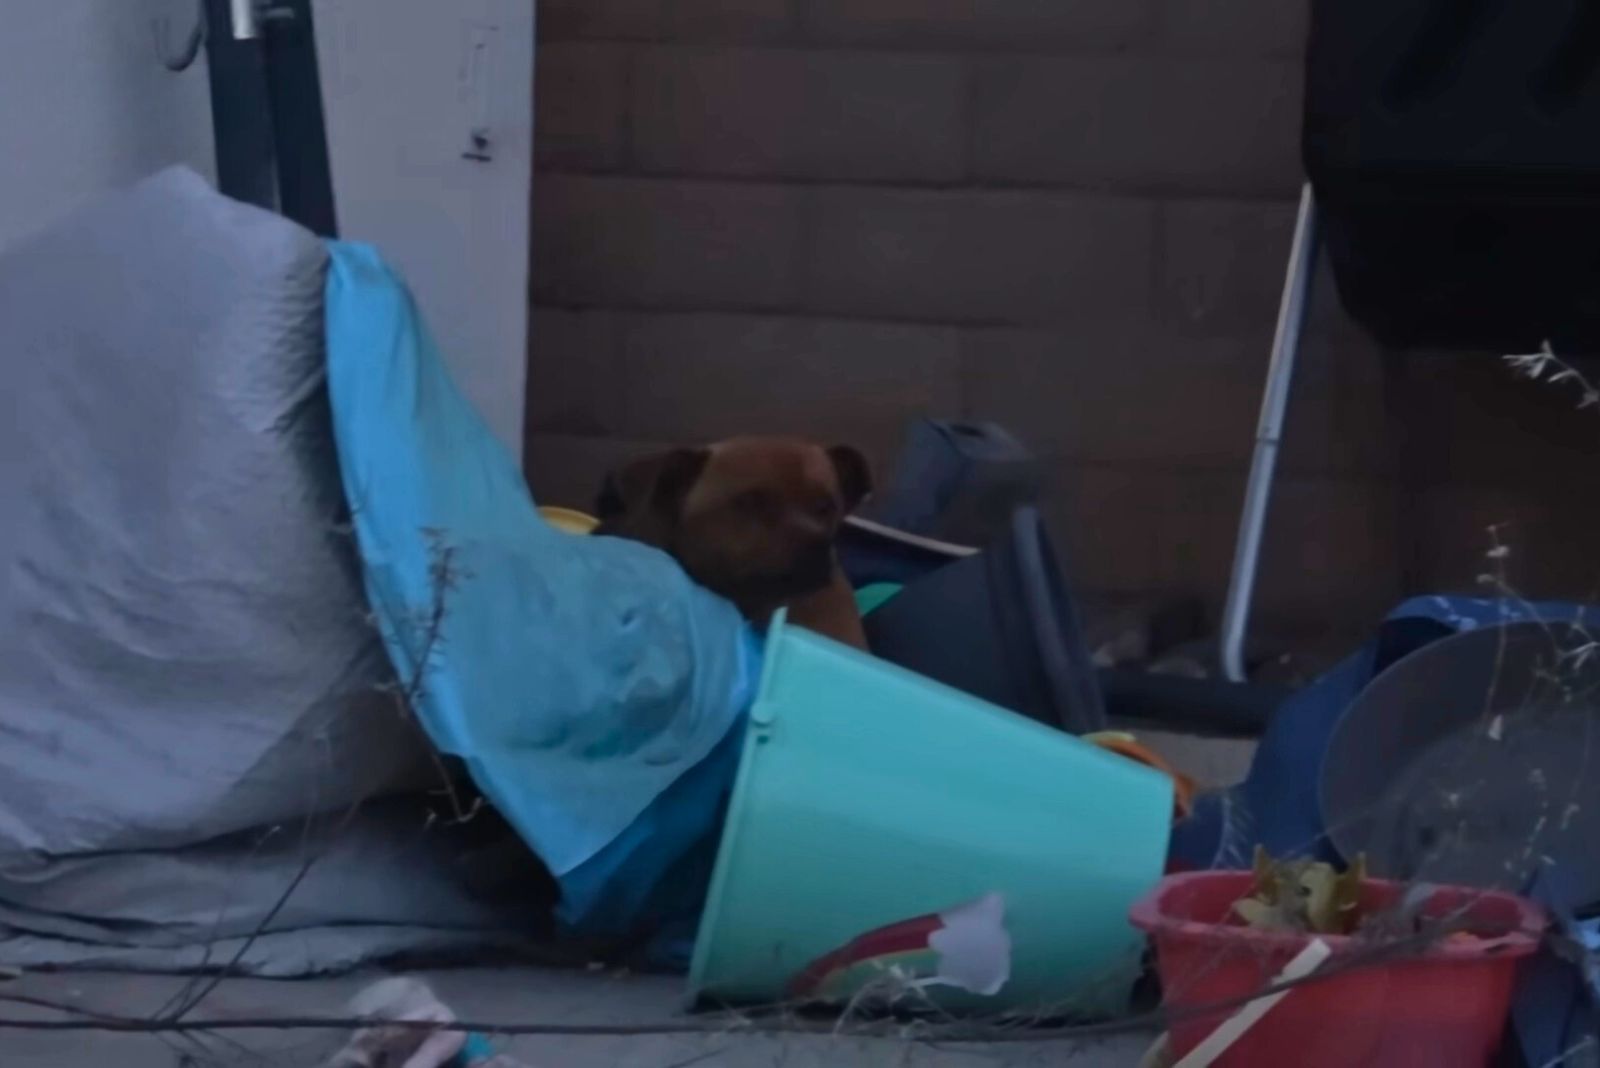 dog hiding in trash